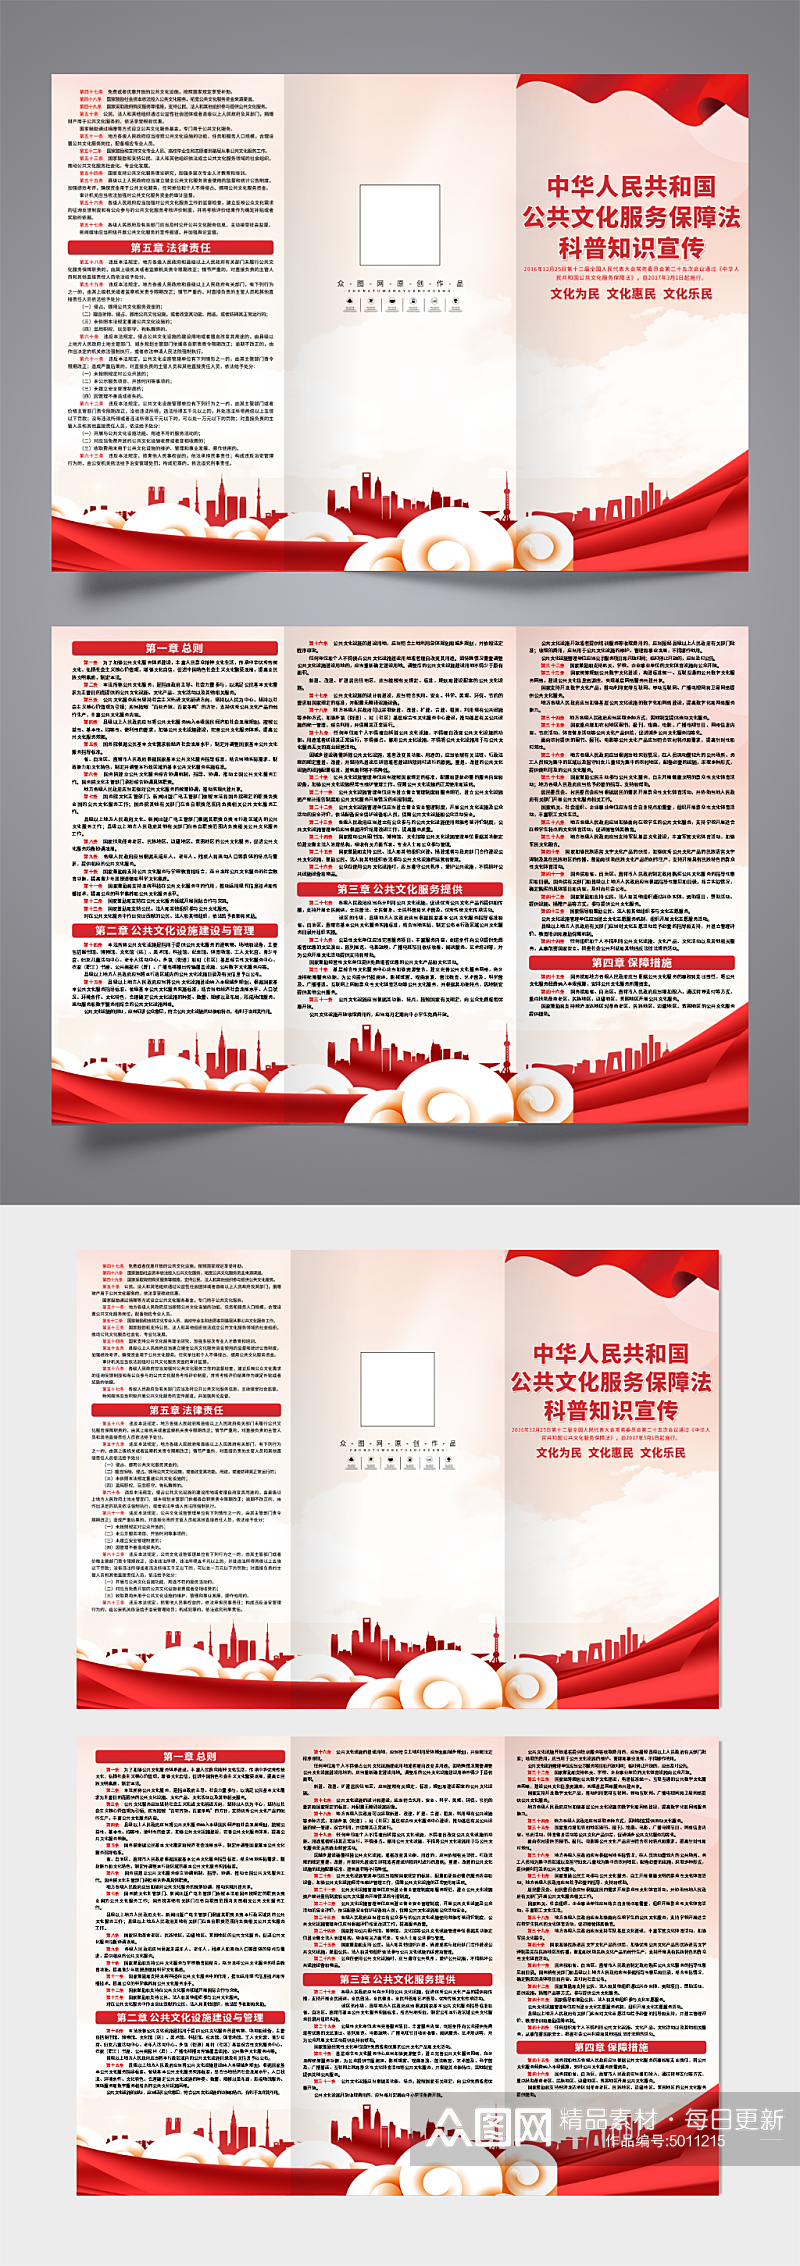 中华人民共和国公共文化服务保障法三折页素材